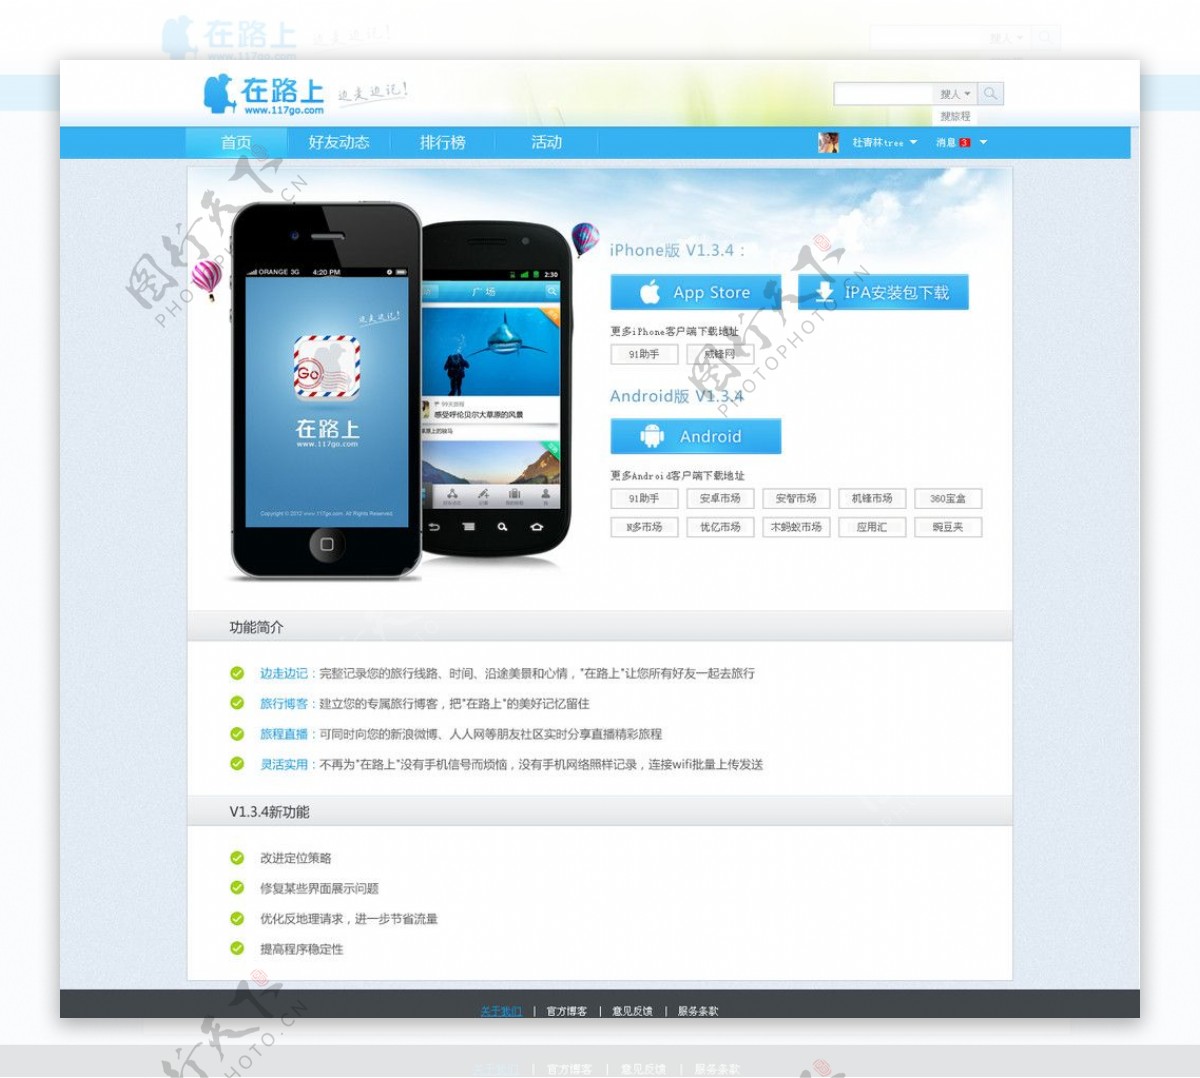 中文模板下载页面设计图片